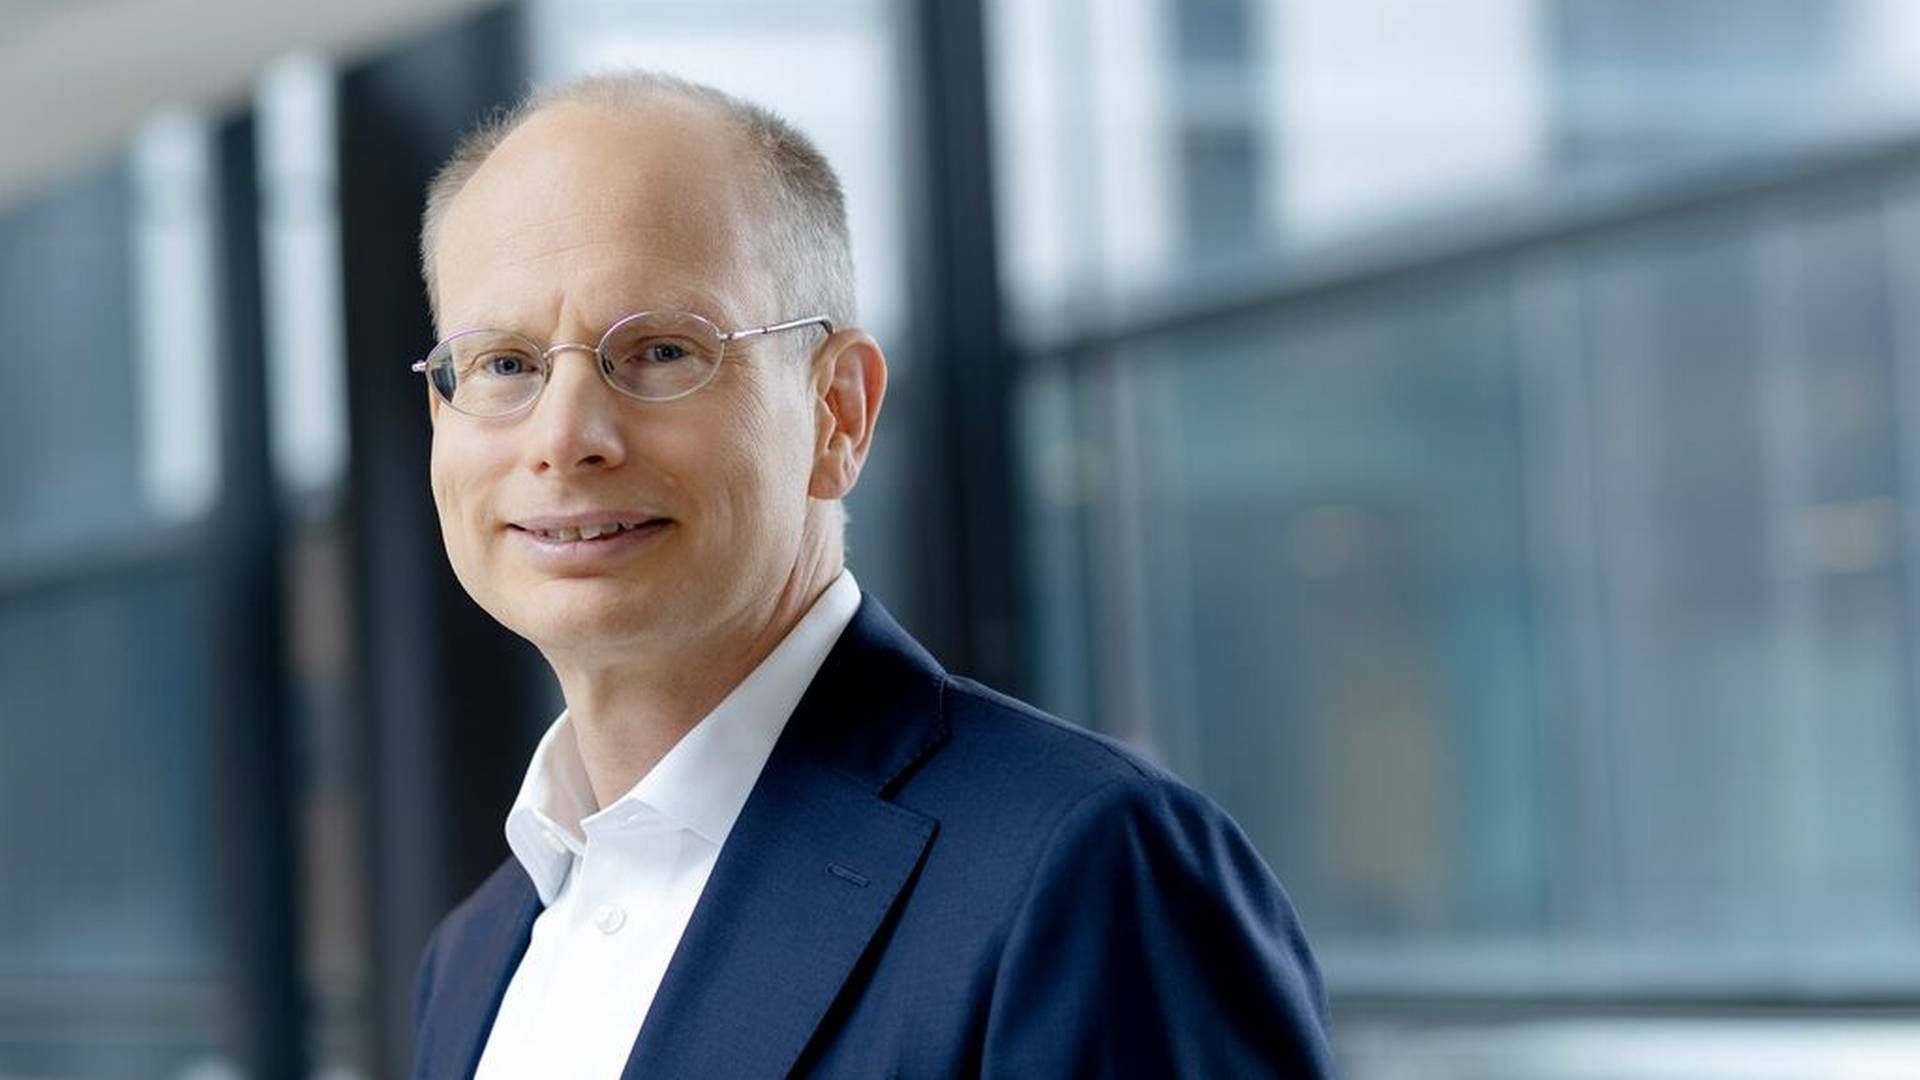 Håkan Agnevall is CEO and president of Finnish technology supplier Wärtsilä. | Photo: Wärtsilä Corporation